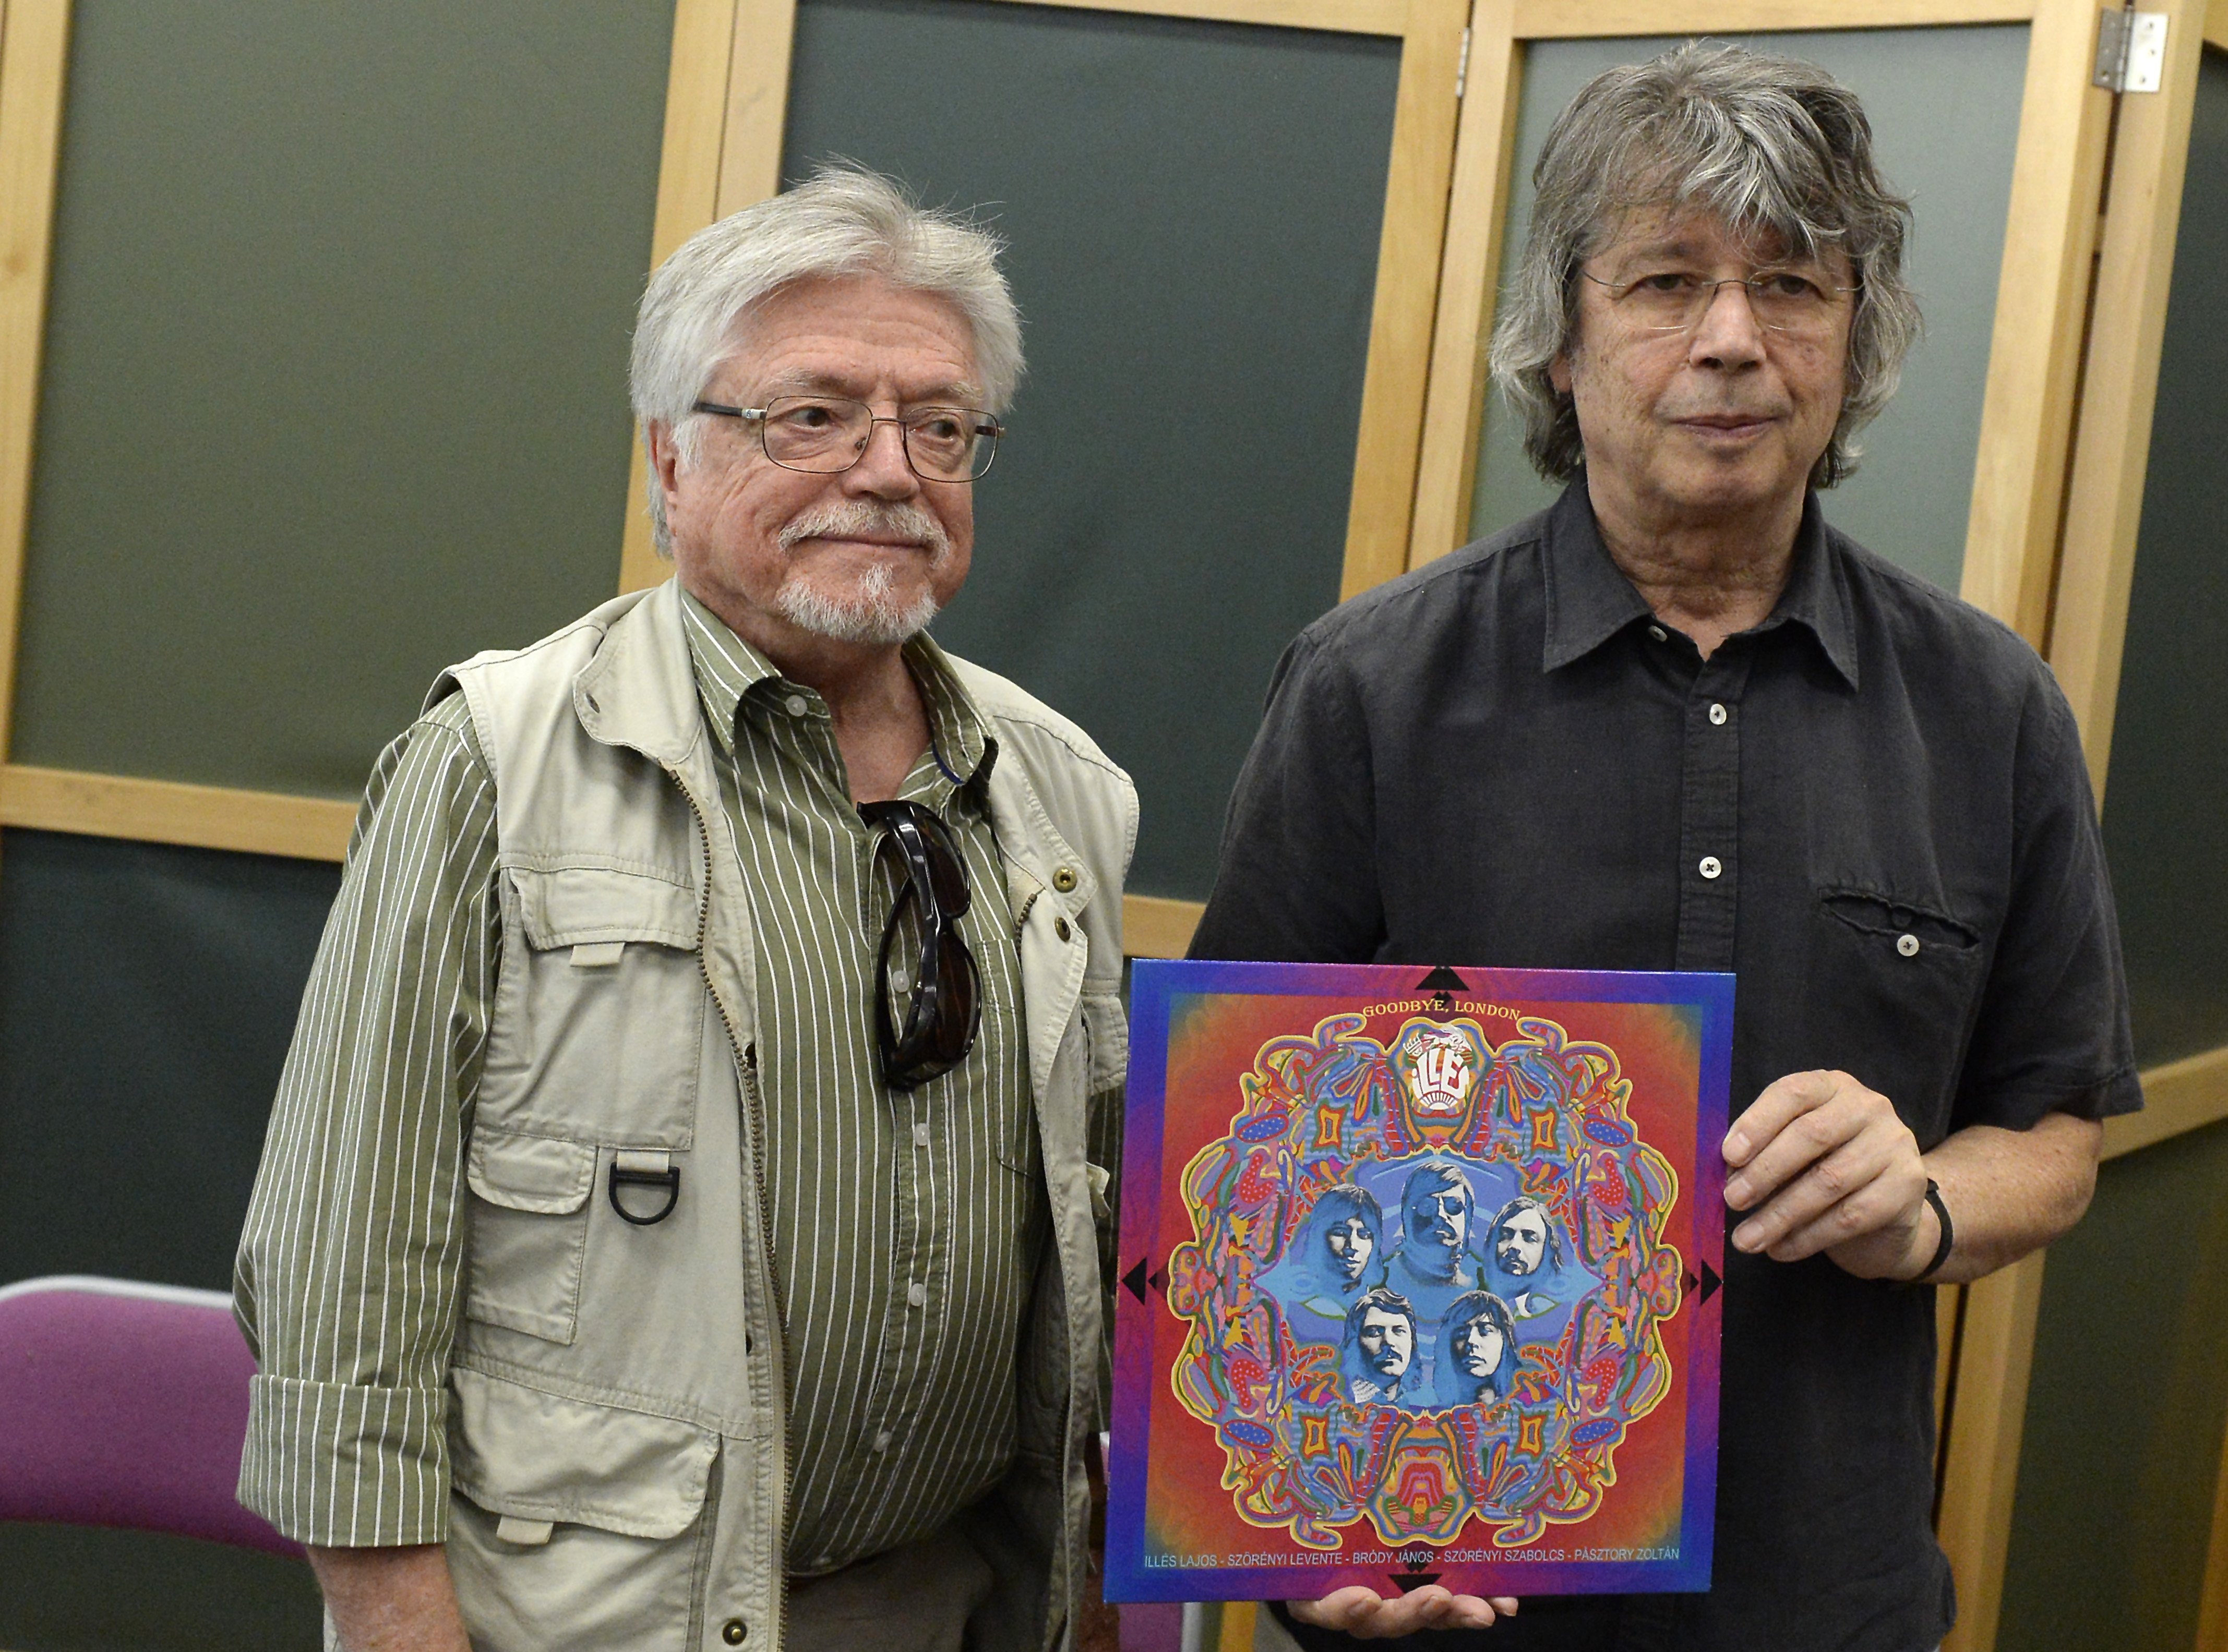 Szörényi Levente és Bródy János az Illés együttes 1970-es betiltott, Goodbye London címmel 2018-ban kiadott albumával a lemezbemutató koncert sajtótájékoztatóján a Fővárosi Művelődési Házban 2018. május 10-én.